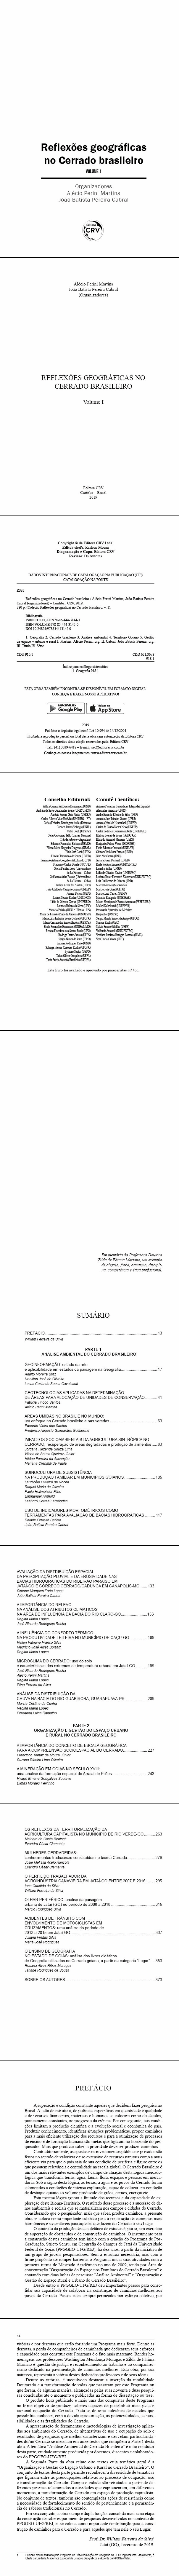 REFLEXÕES GEOGRÁFICAS NO CERRADO BRASILEIRO <br>Volume I